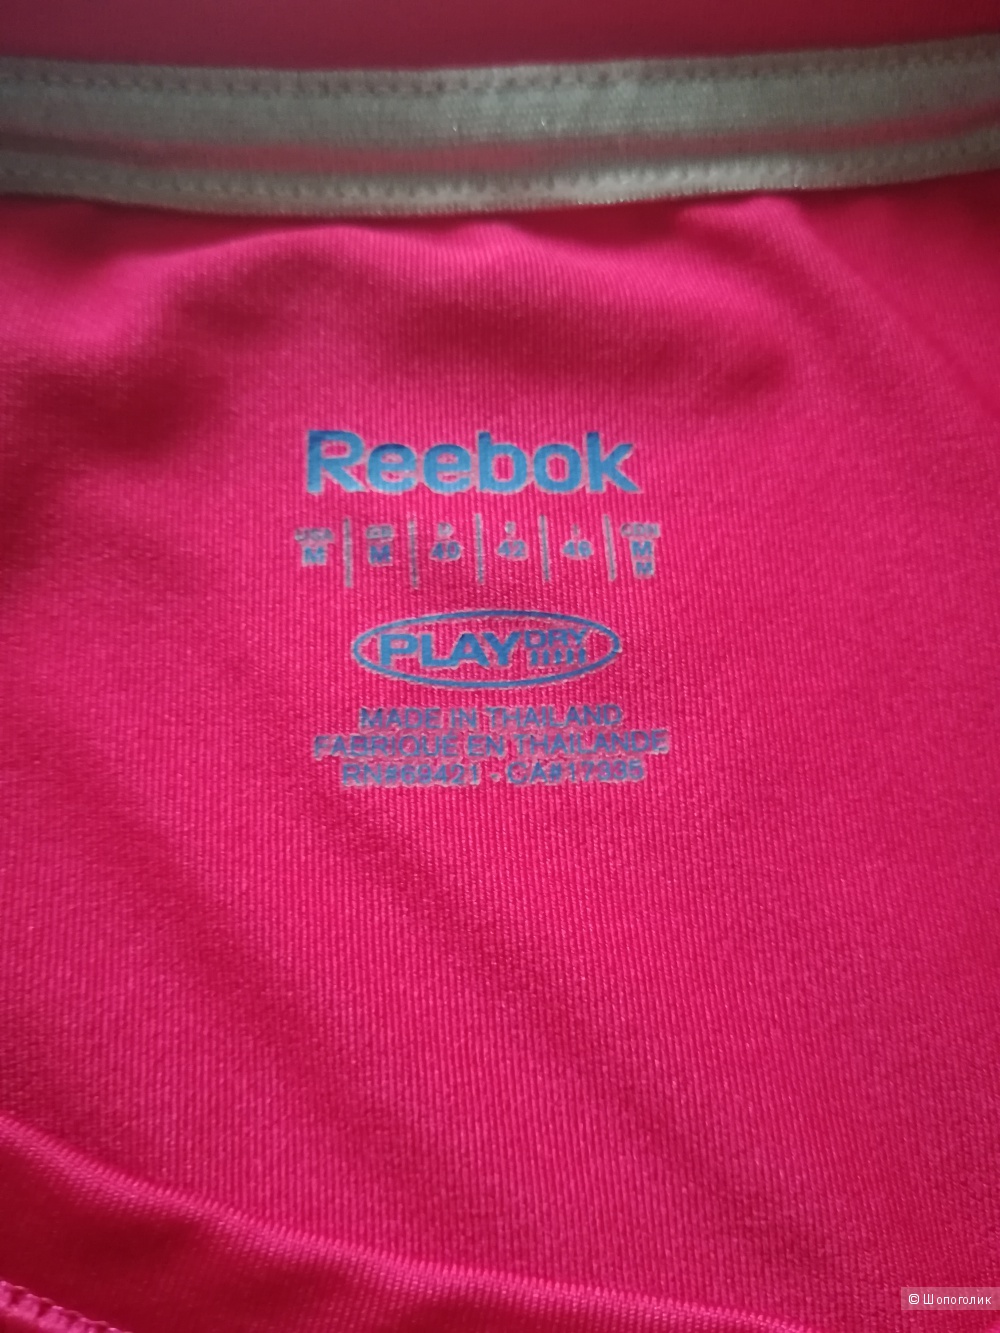 Сет из футболки Reebok+ леггинсы Adidas, размер М